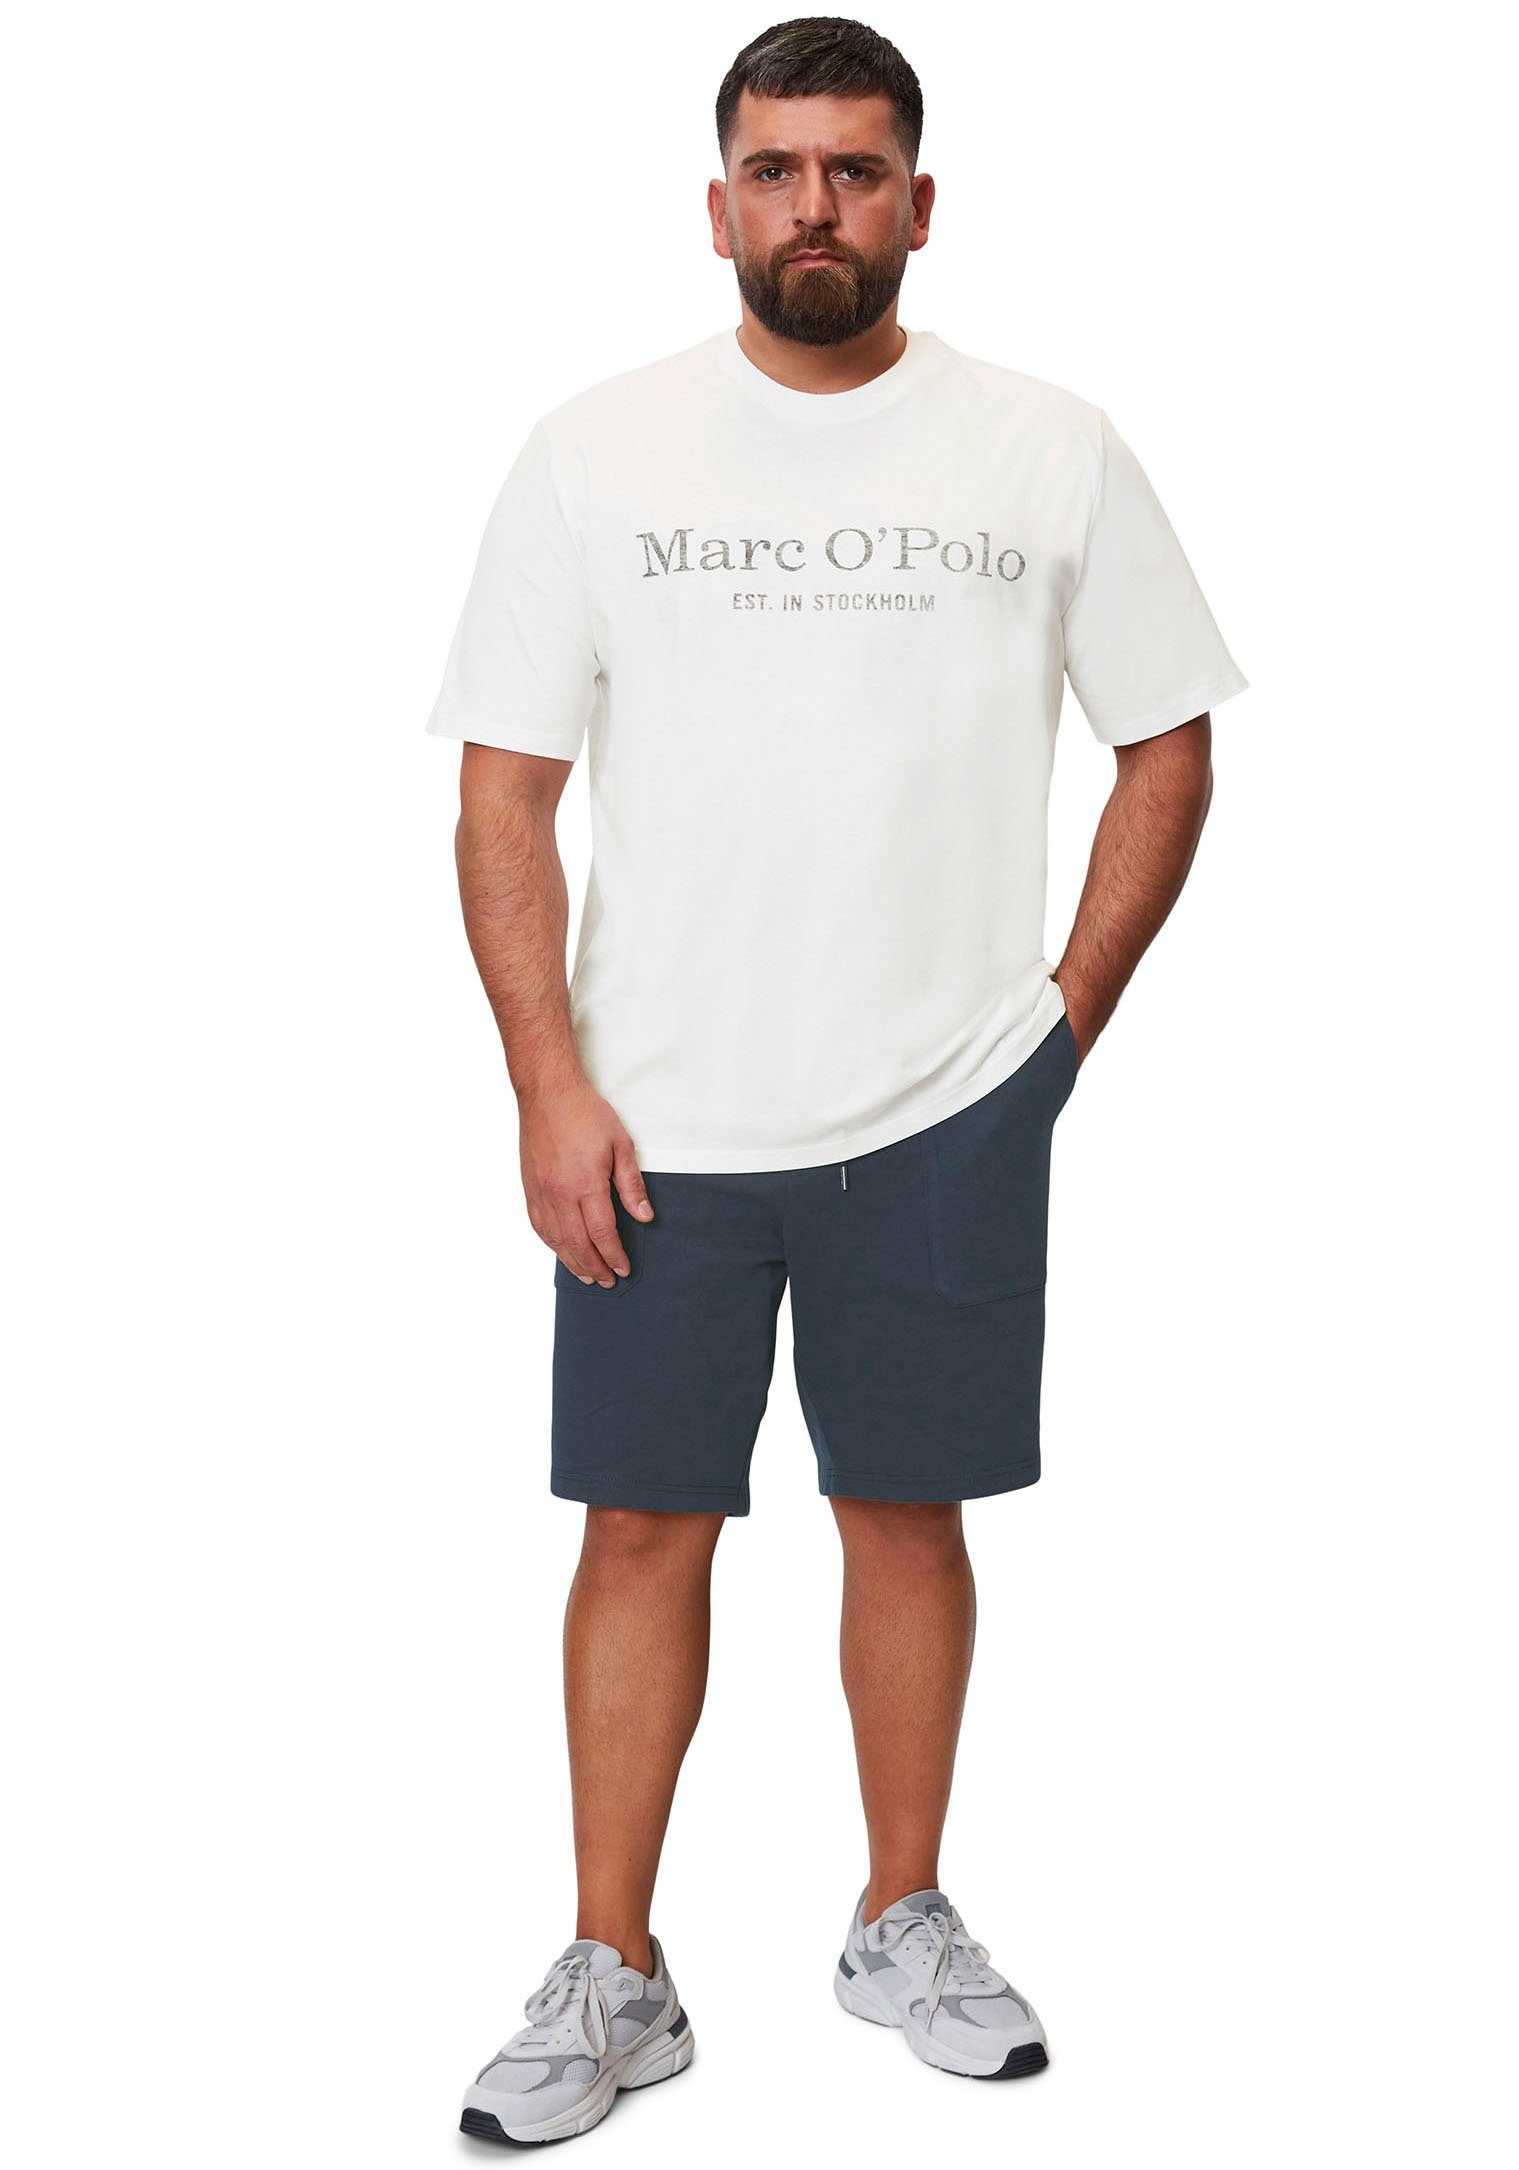 Marc O'Polo in white T-Shirt Big&Tall-Größen